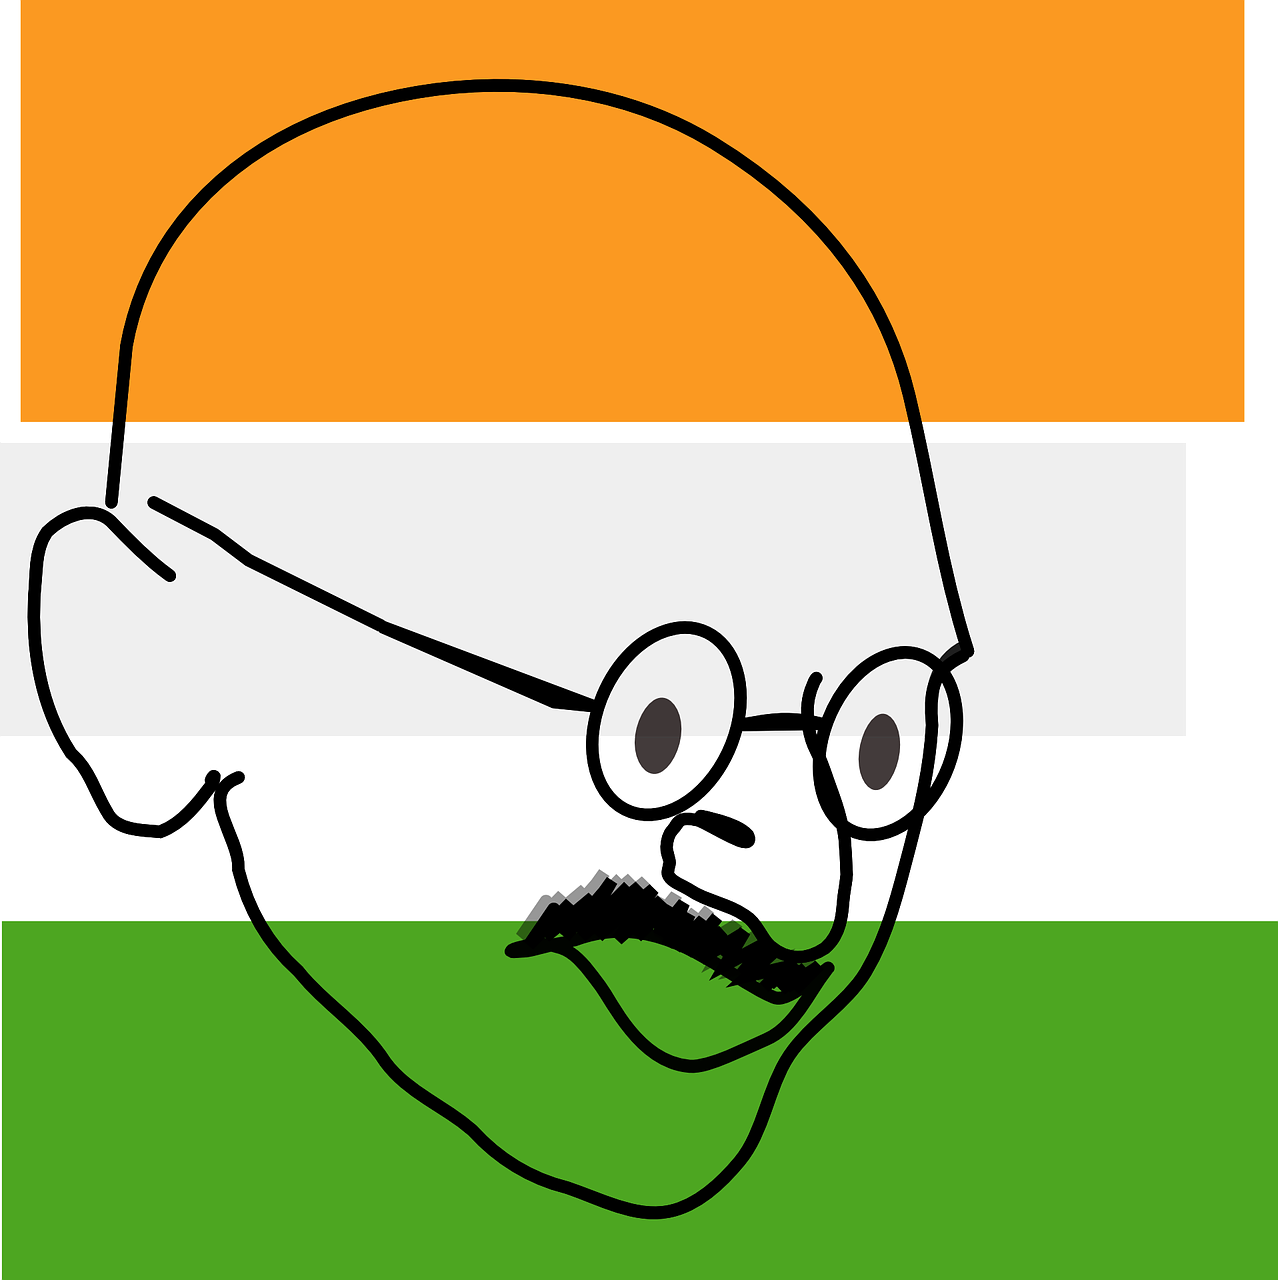 mahatma gandhi flag indian free photo